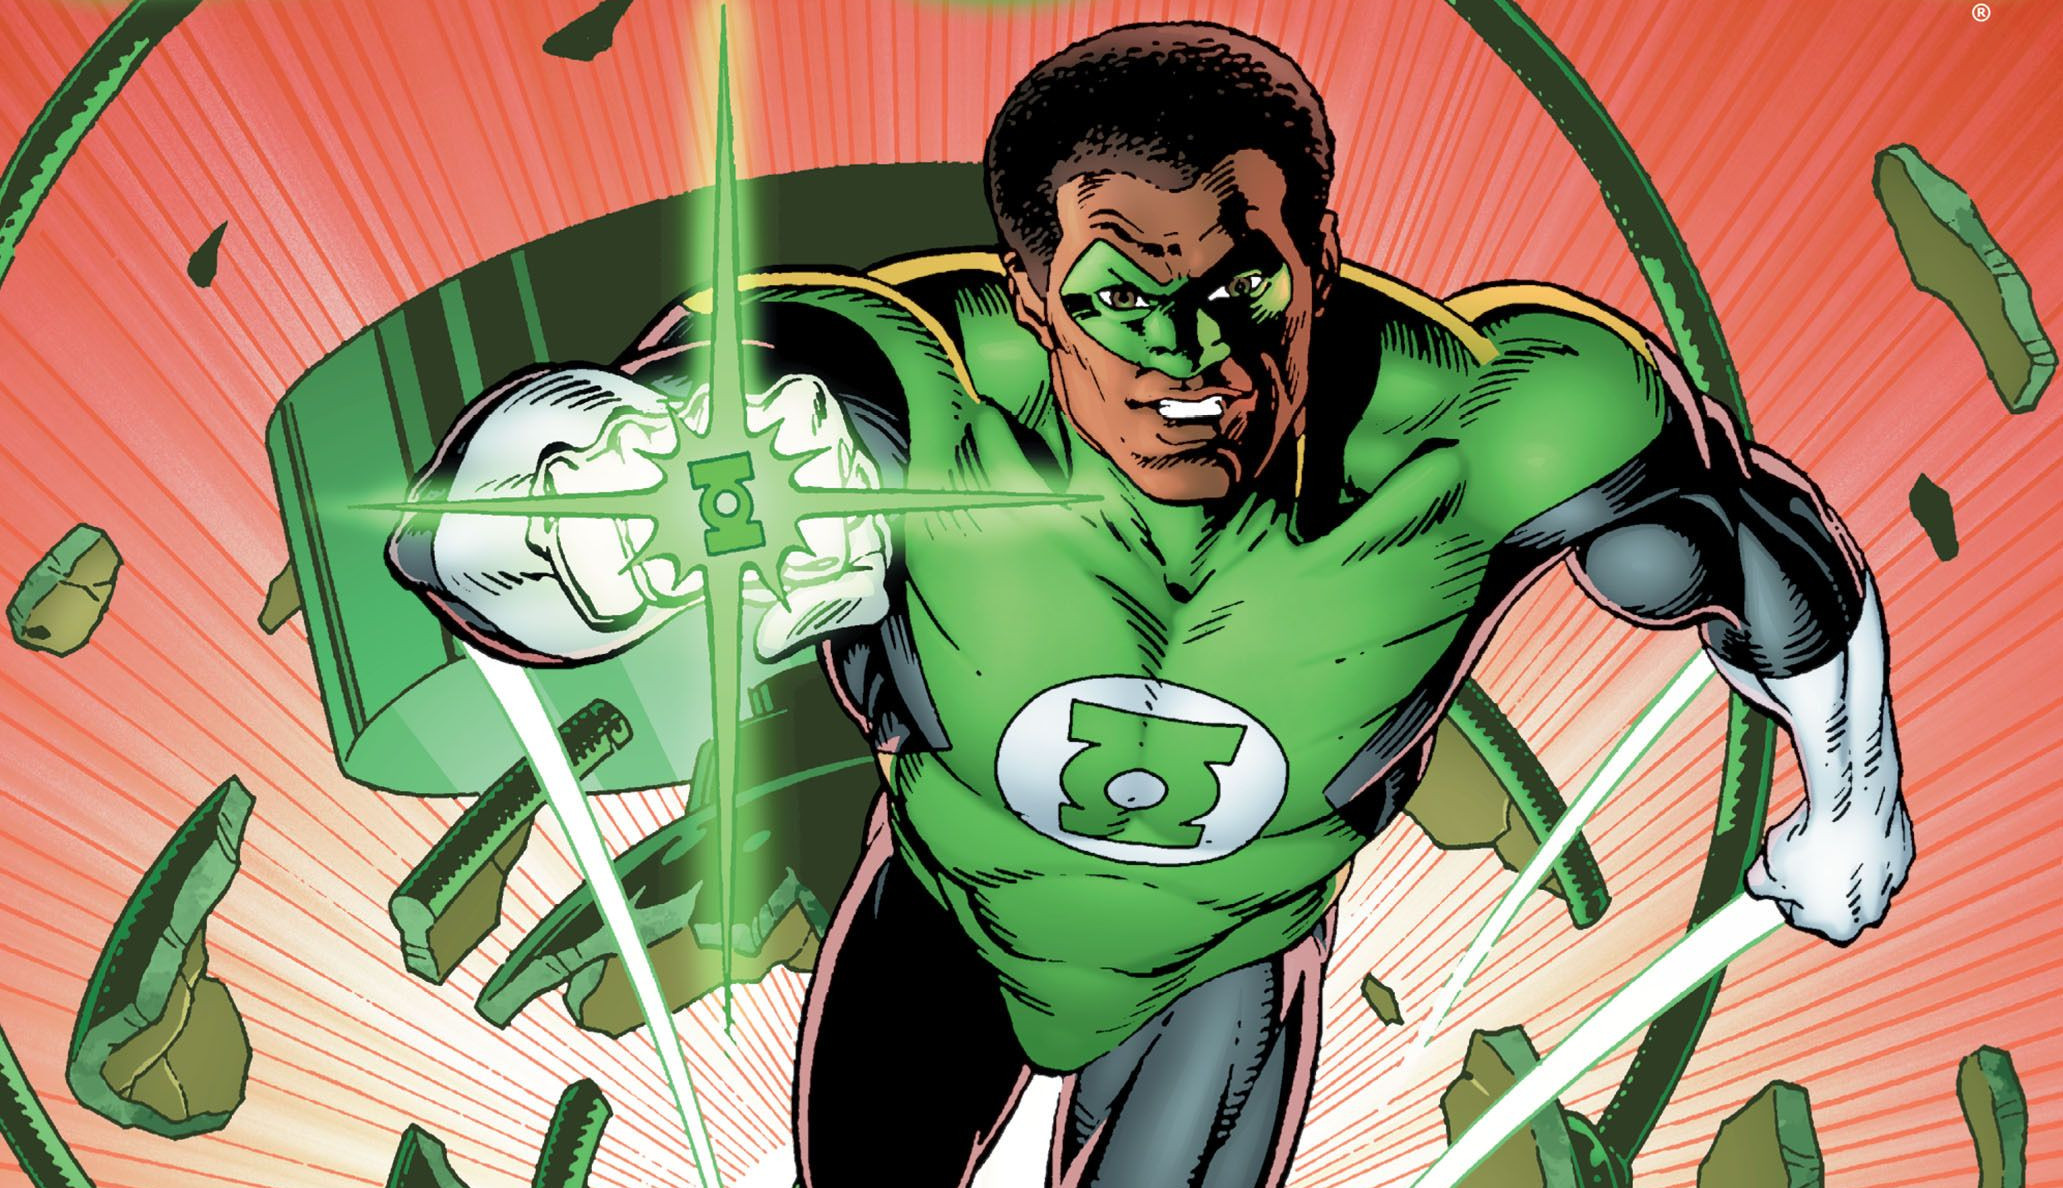 Las 5 mejores historias de Green Lantern (John Stewart) en los comics